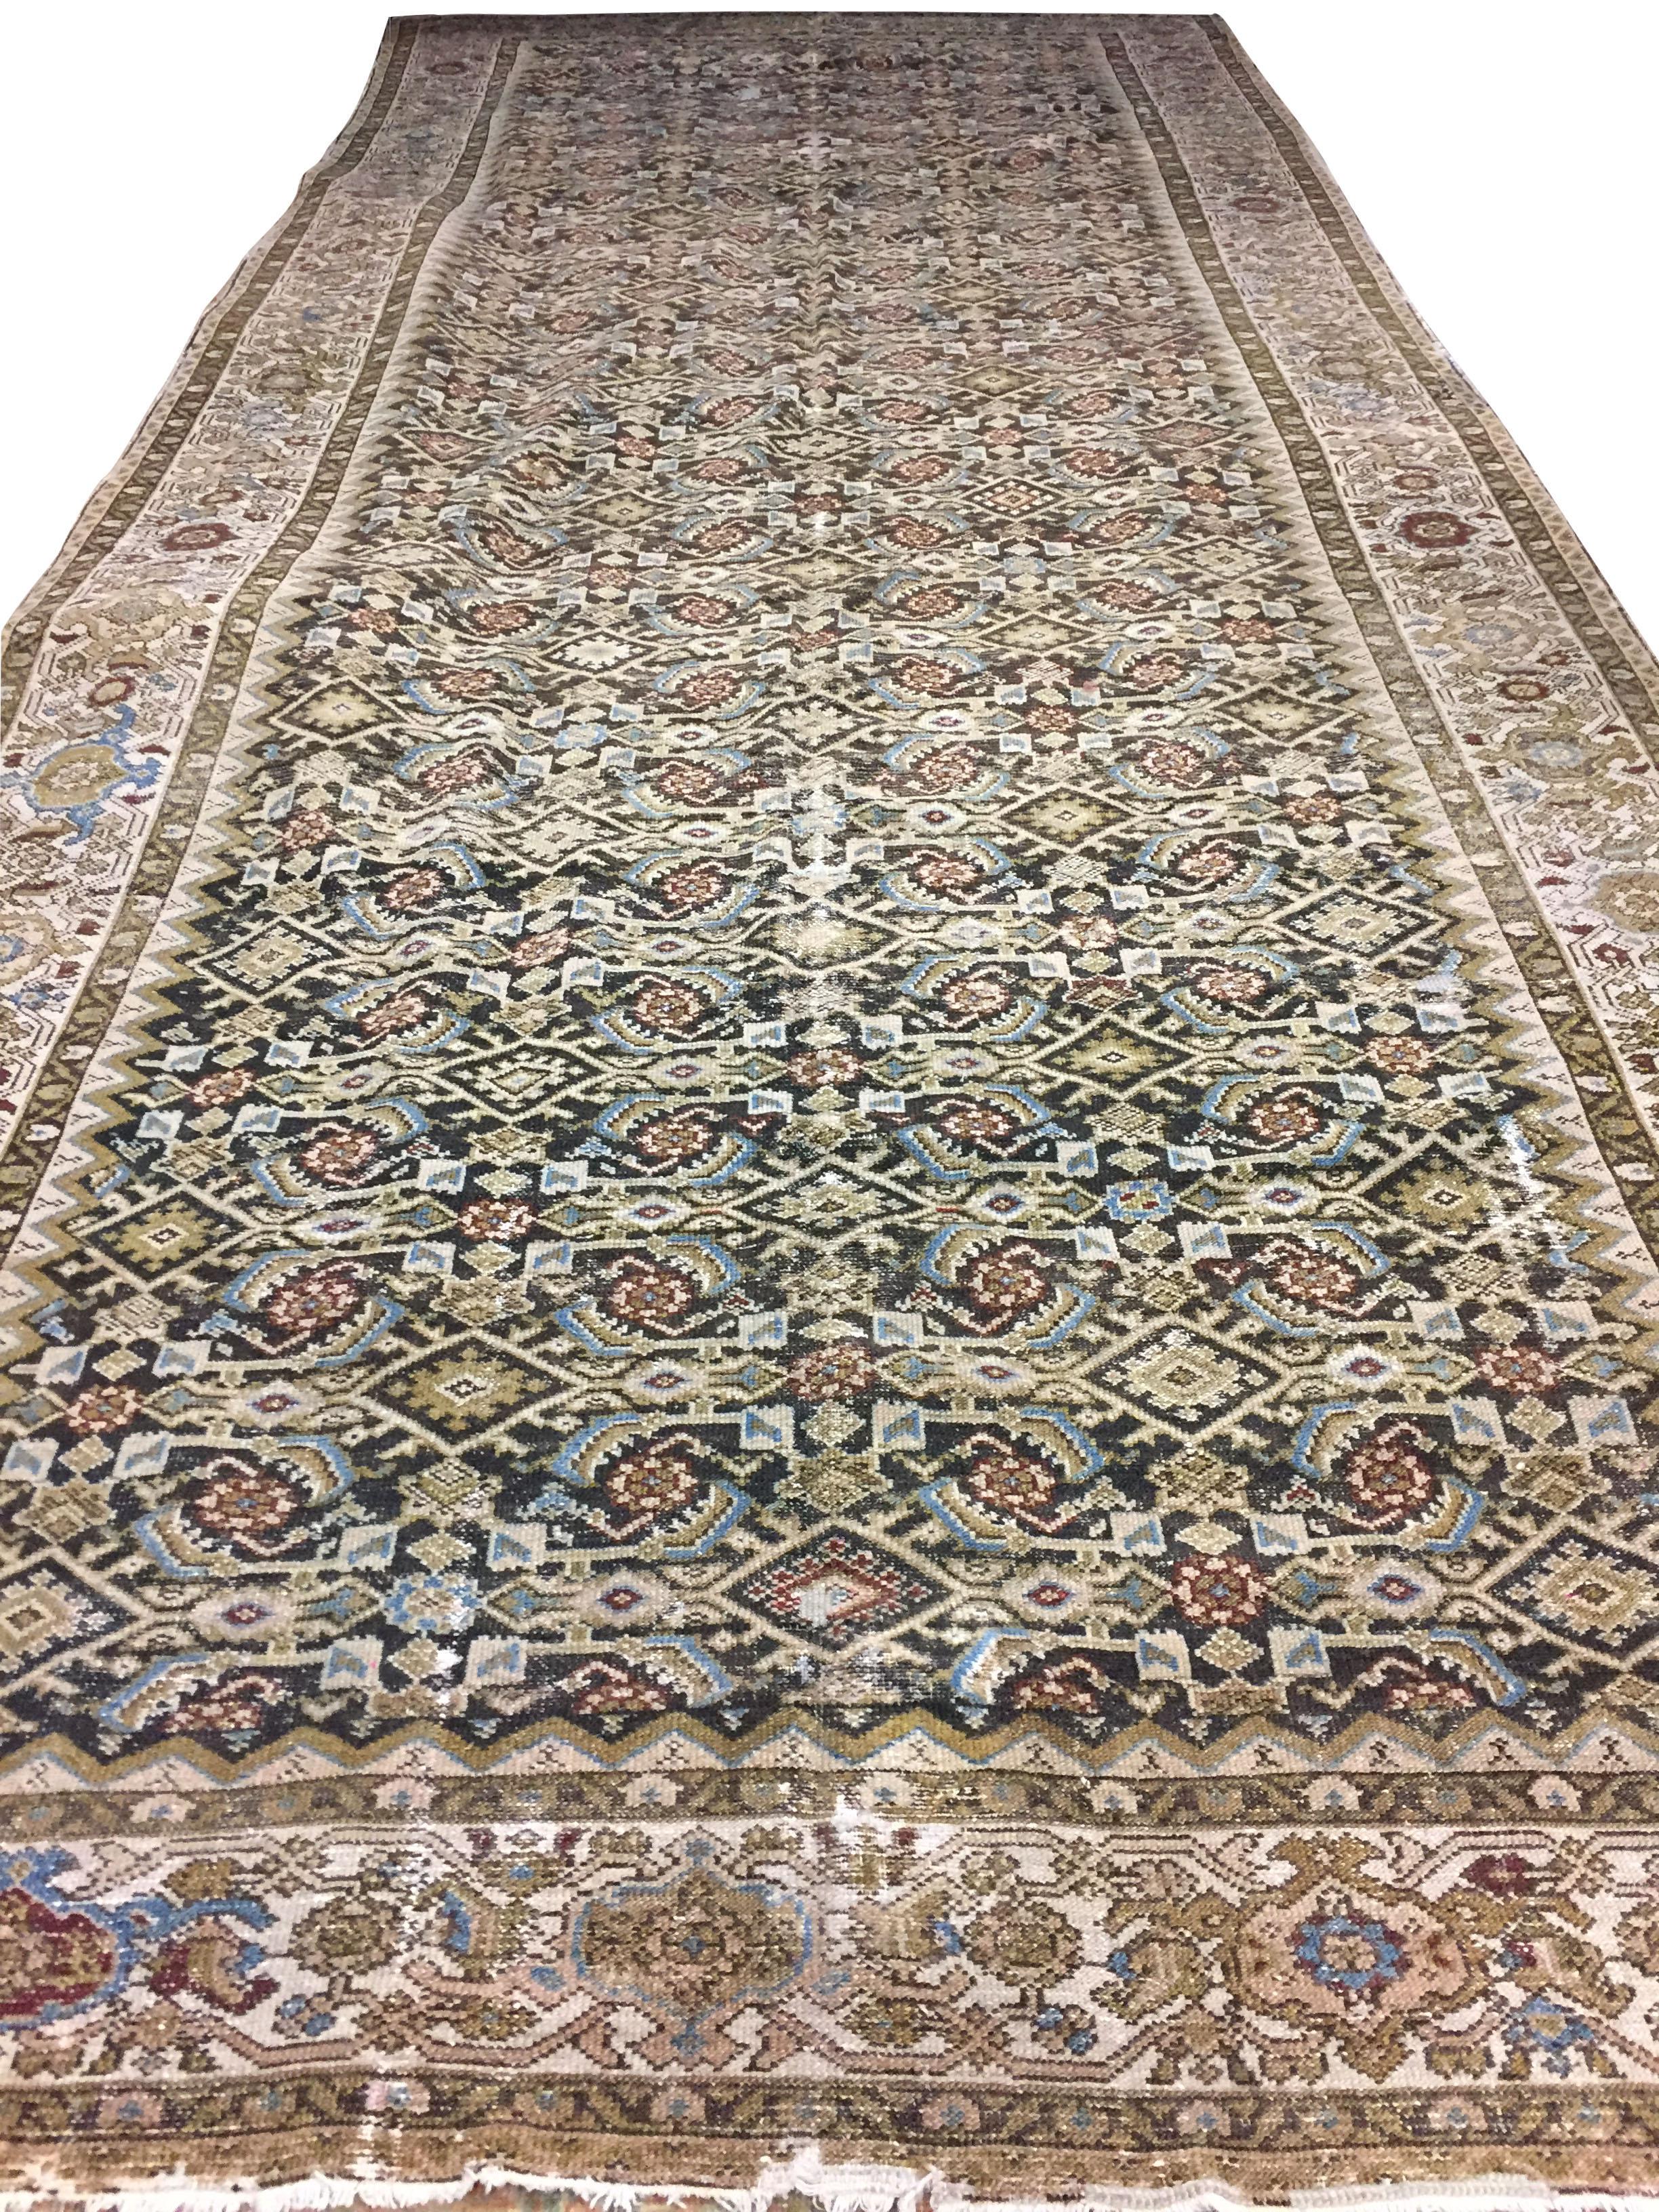 19th Century Antique Persian Malayer Corridor Carpet Rug, circa 1900, 7'1 x 17'11 For Sale